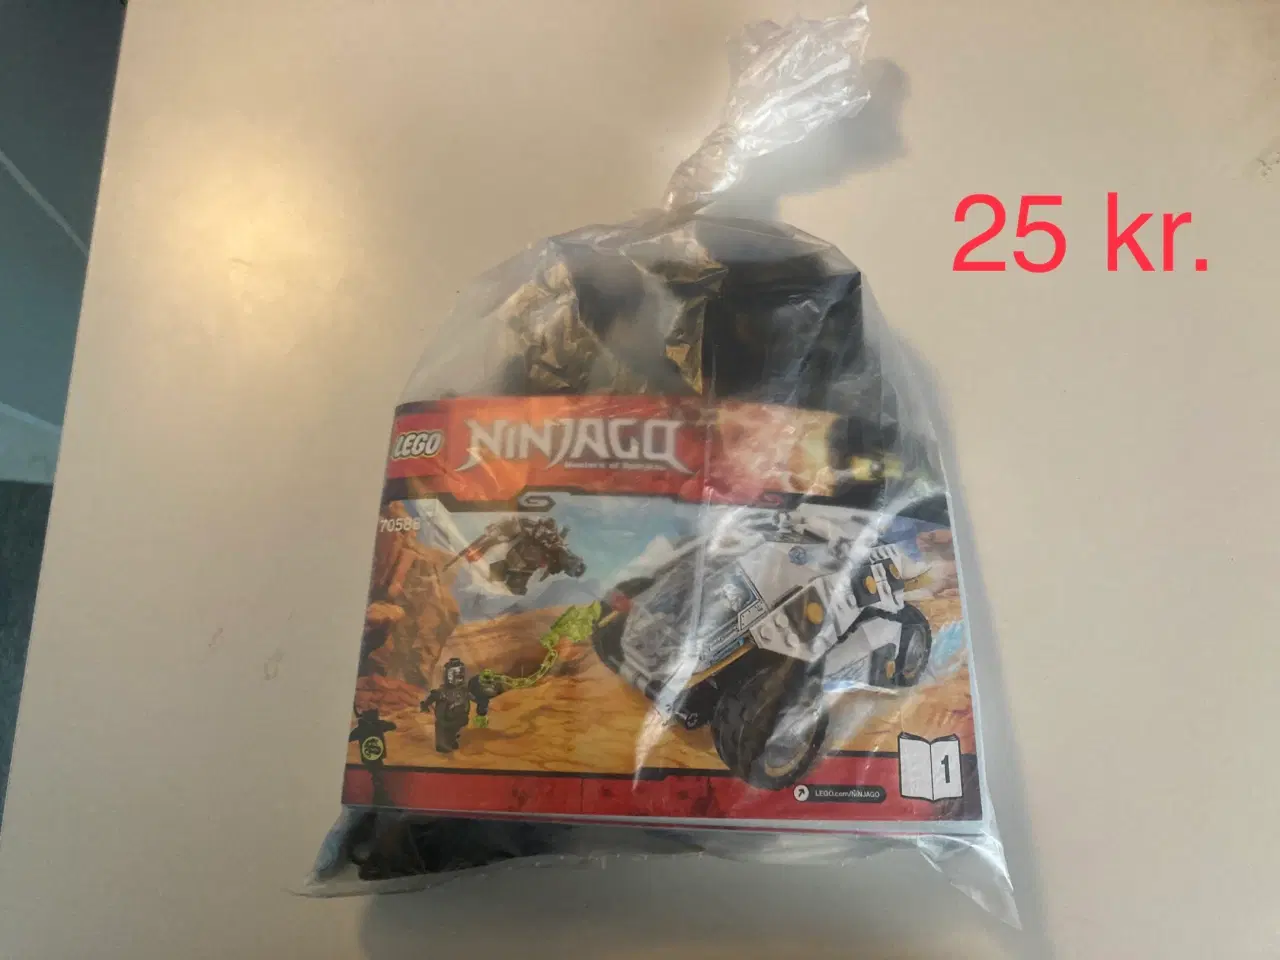 Billede 12 - Legosæt sælges (priserne er fra 5 kr. til 200 kr.)